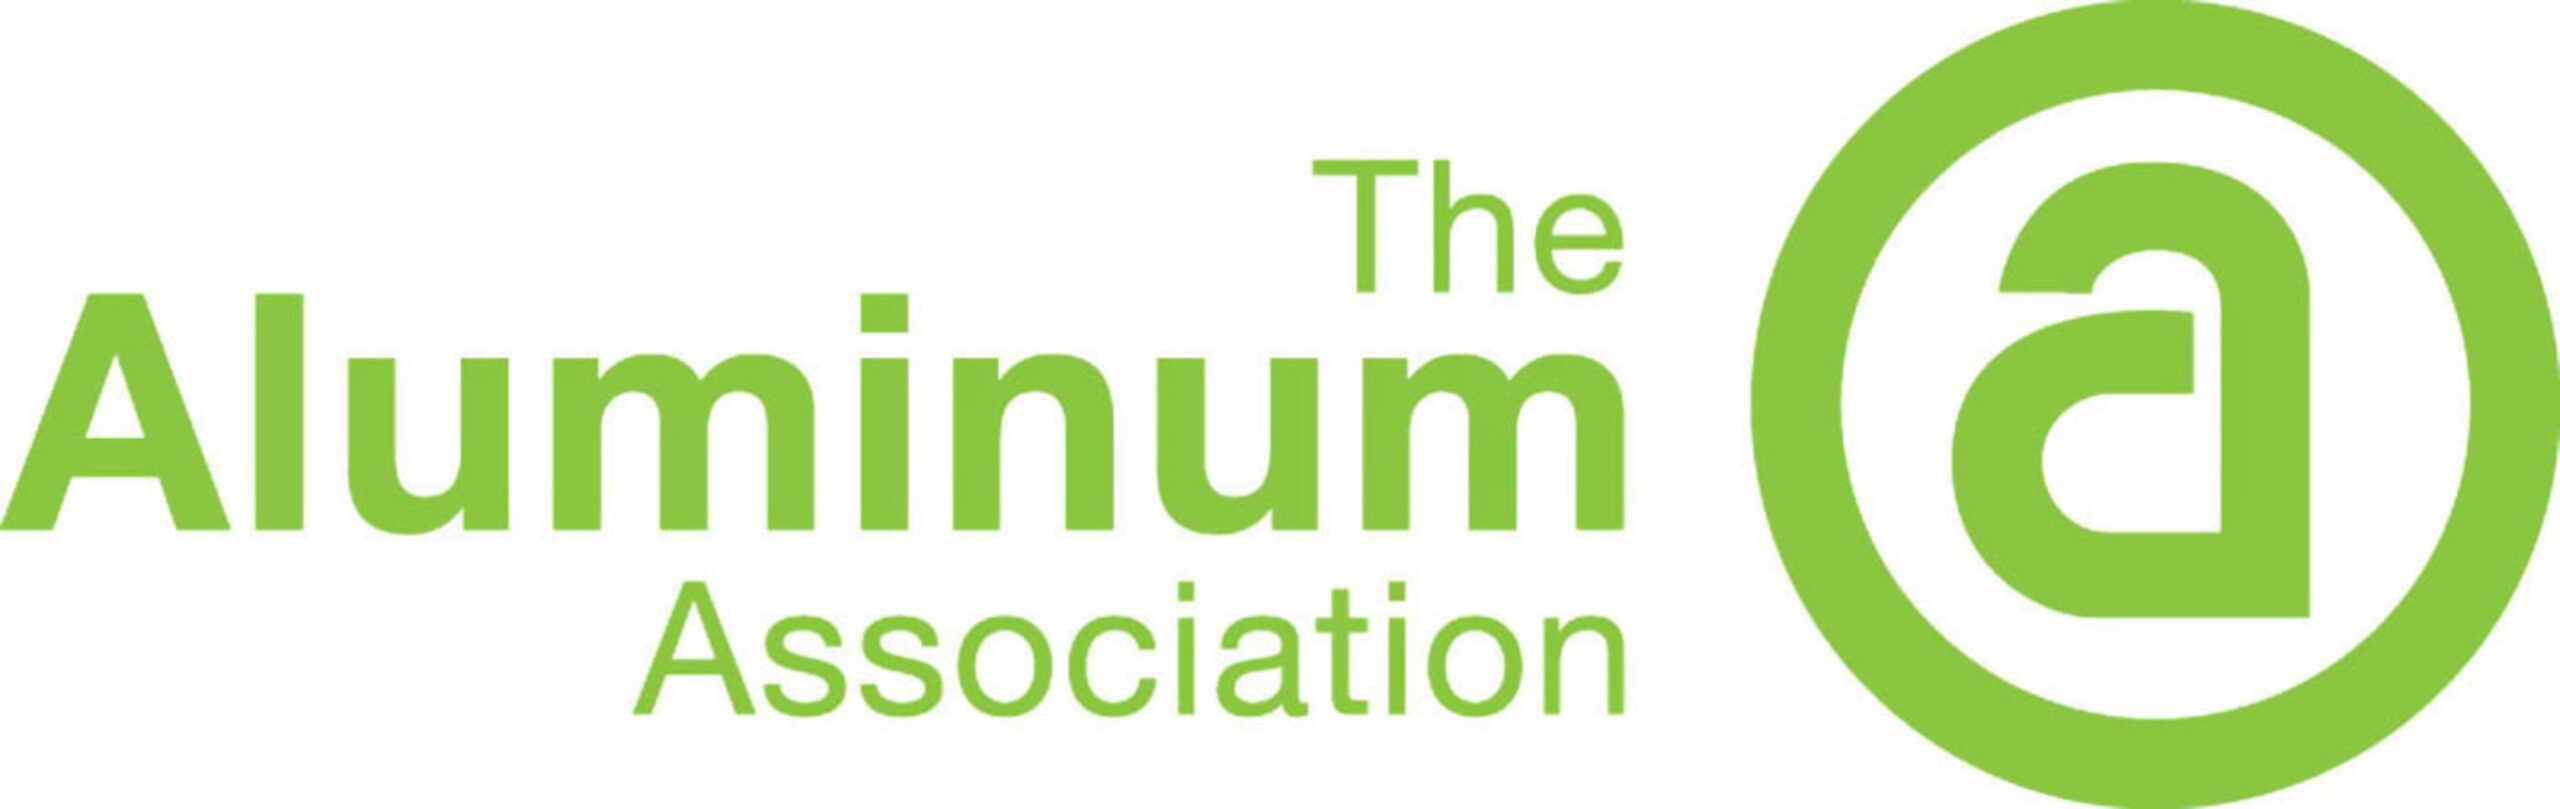 aluminum design manual Bulan 2 Aluminum Association Releases  Edition of Aluminum Design Manual